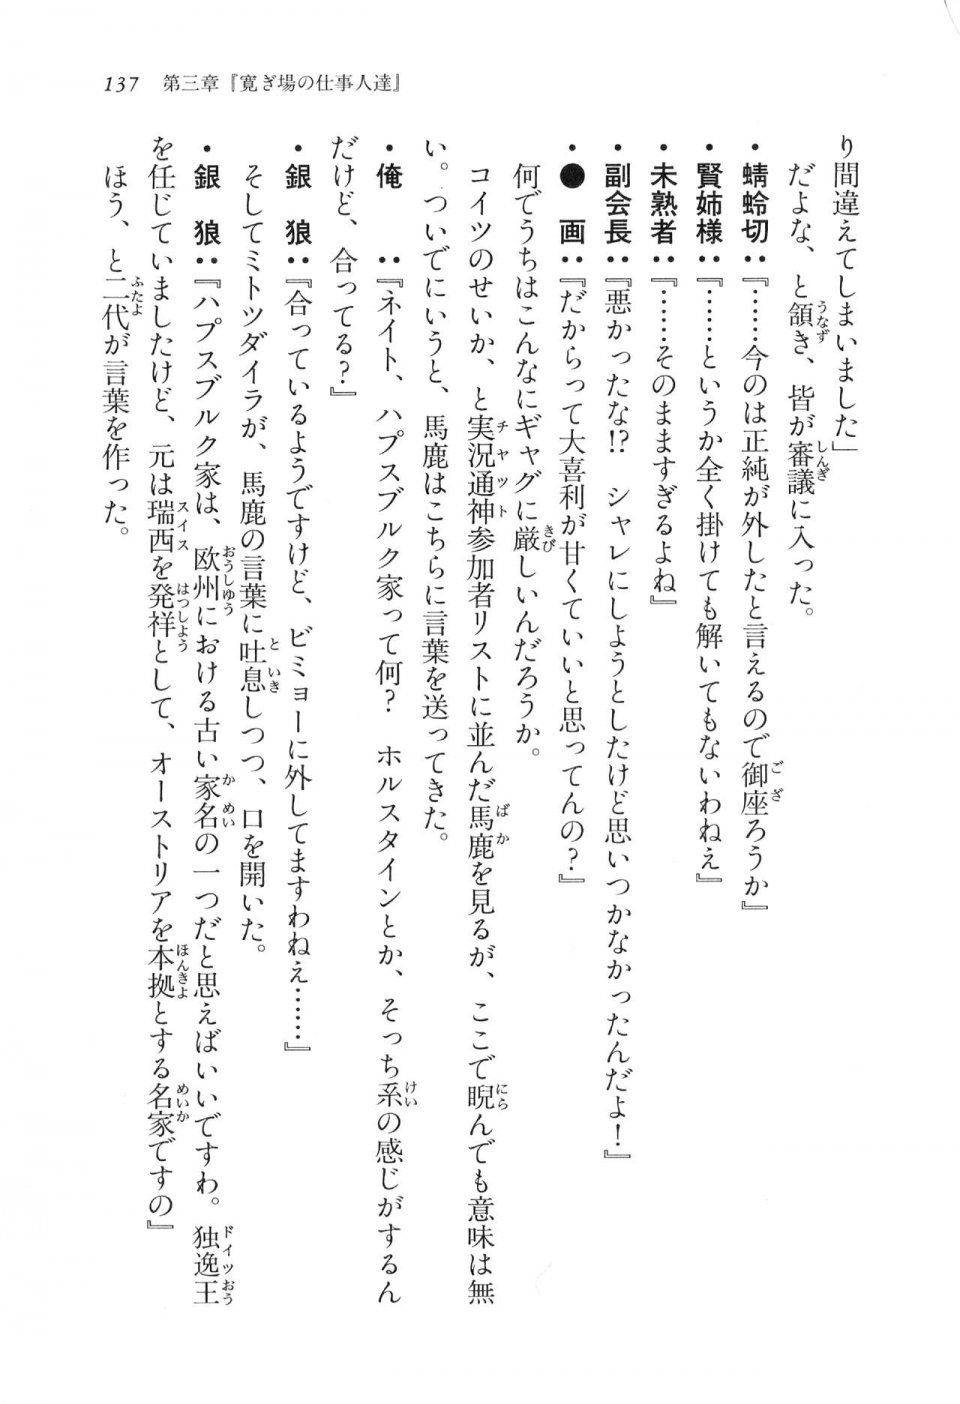 Kyoukai Senjou no Horizon LN Vol 16(7A) - Photo #137